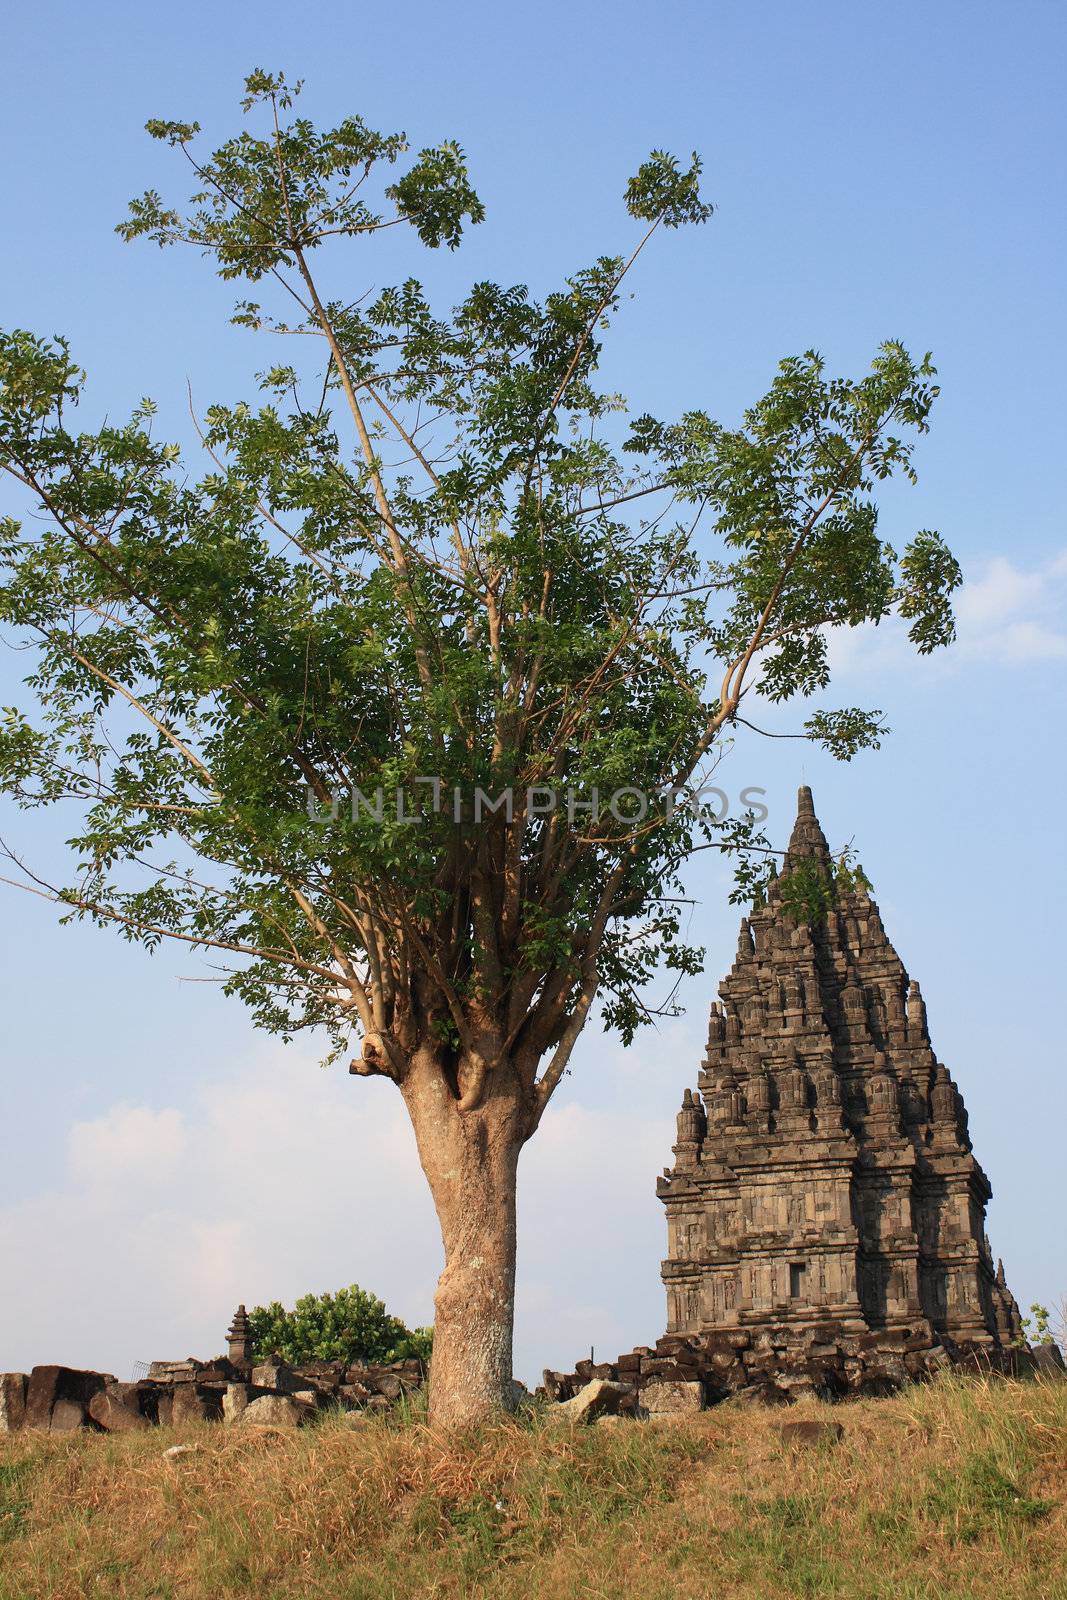 A view in Hindu temple Prambanan. Indonesia, Java, Yogyakarta